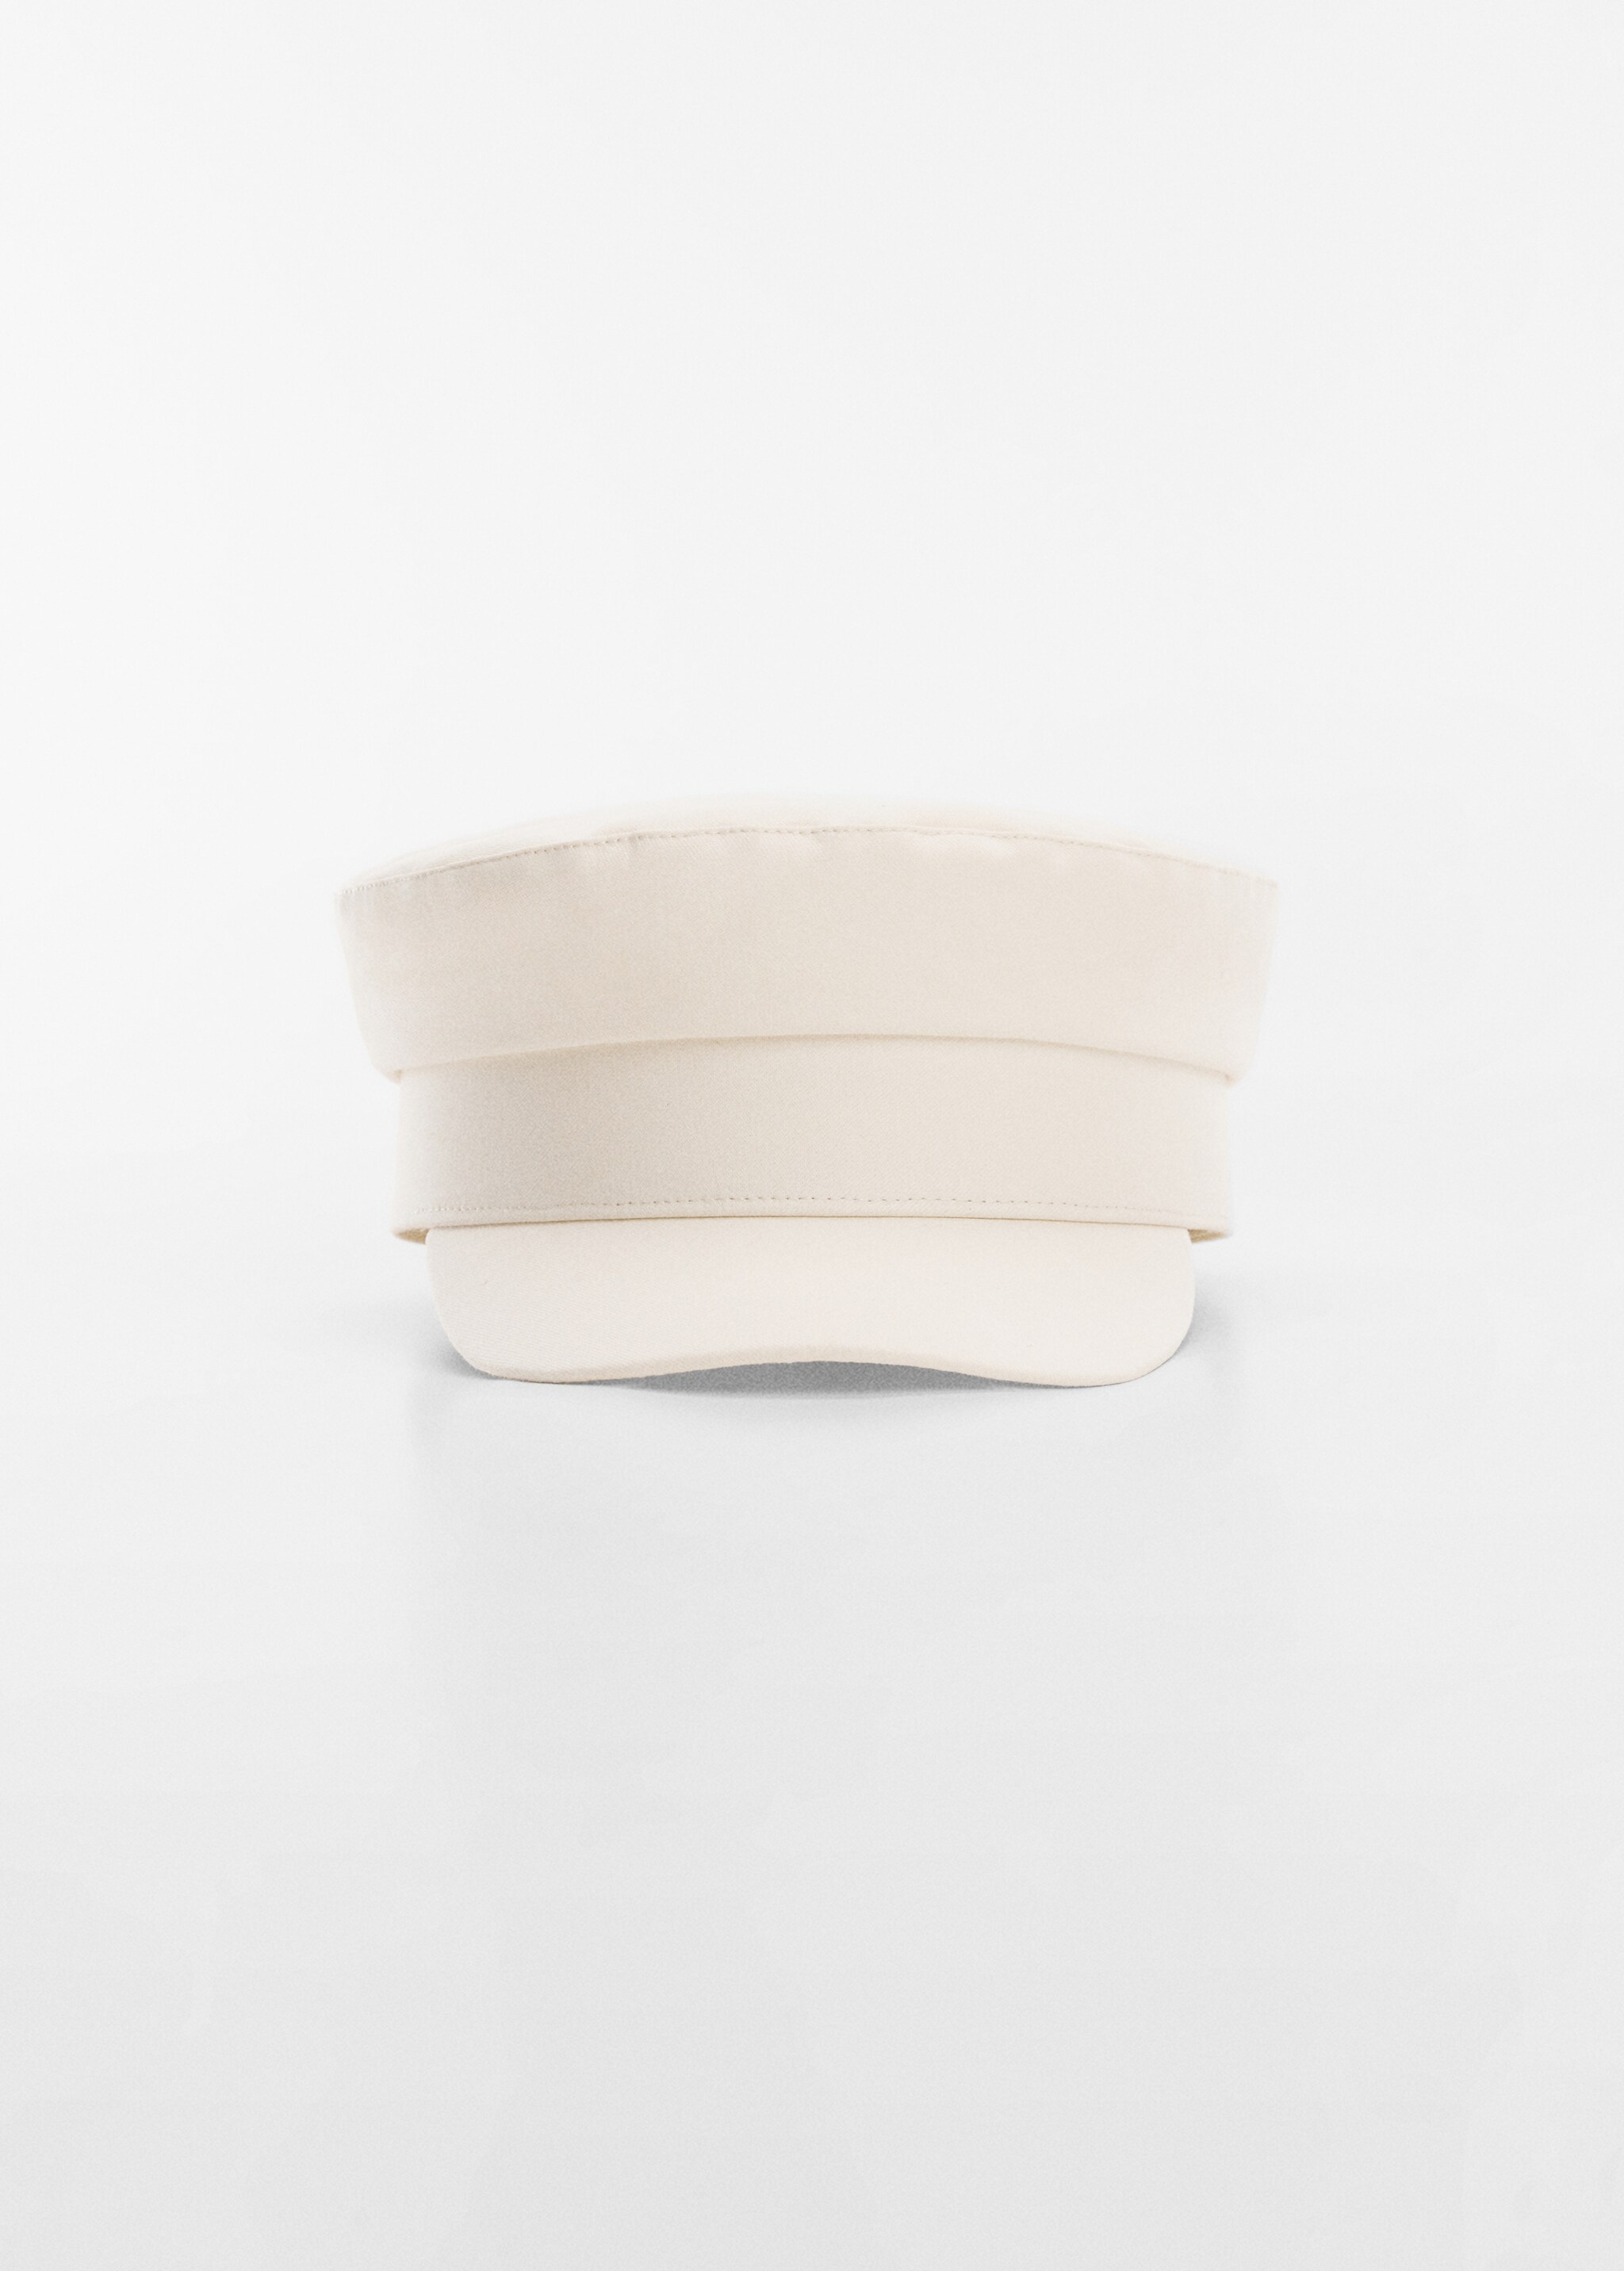 Cotton baker cap - Medium plane